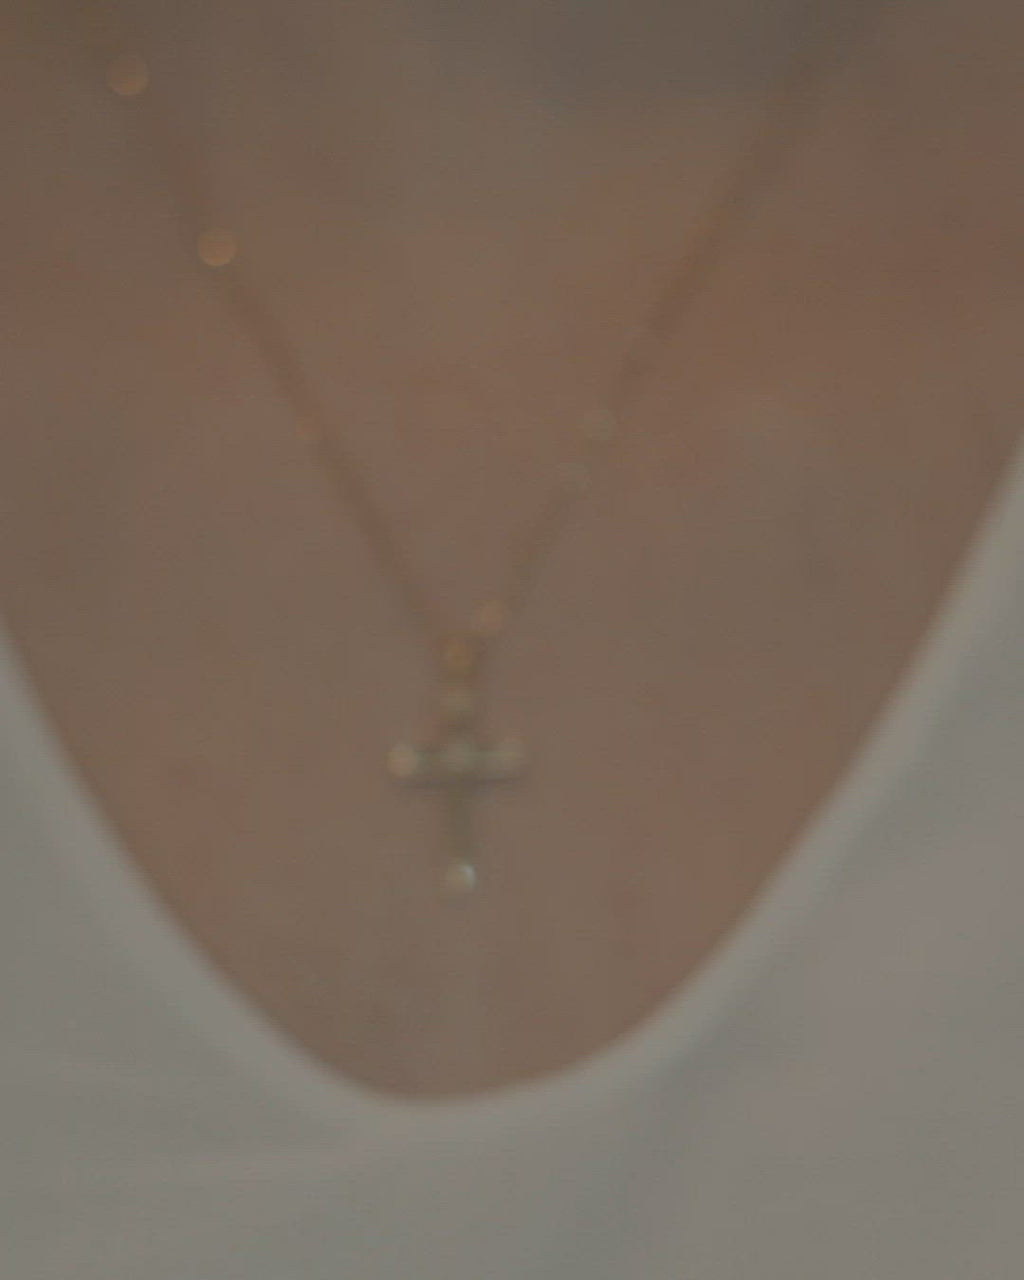 Γυναικείος χρυσός σταυρός Κ18 με διαμάντια και στριφτή αλυσίδα, σε μοντέλο.